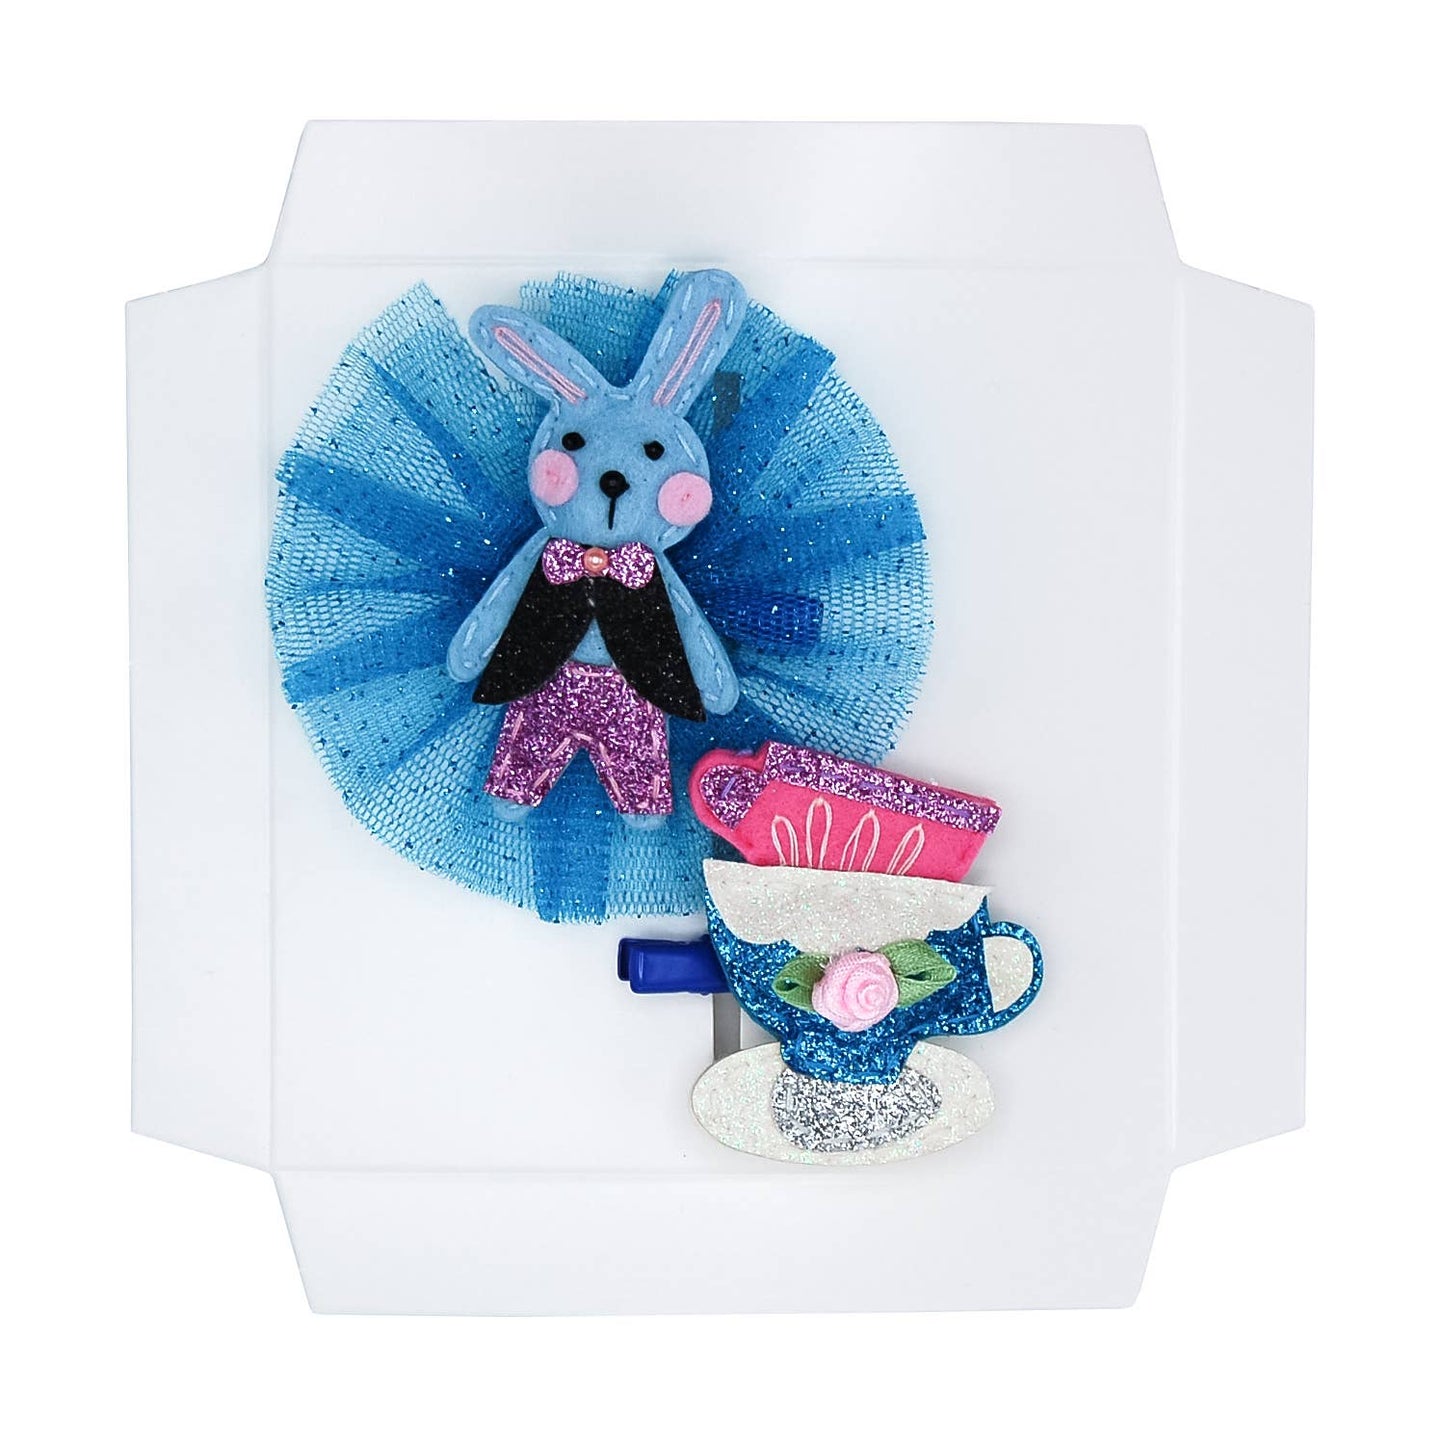 Teatime Bunny Gift Box Set